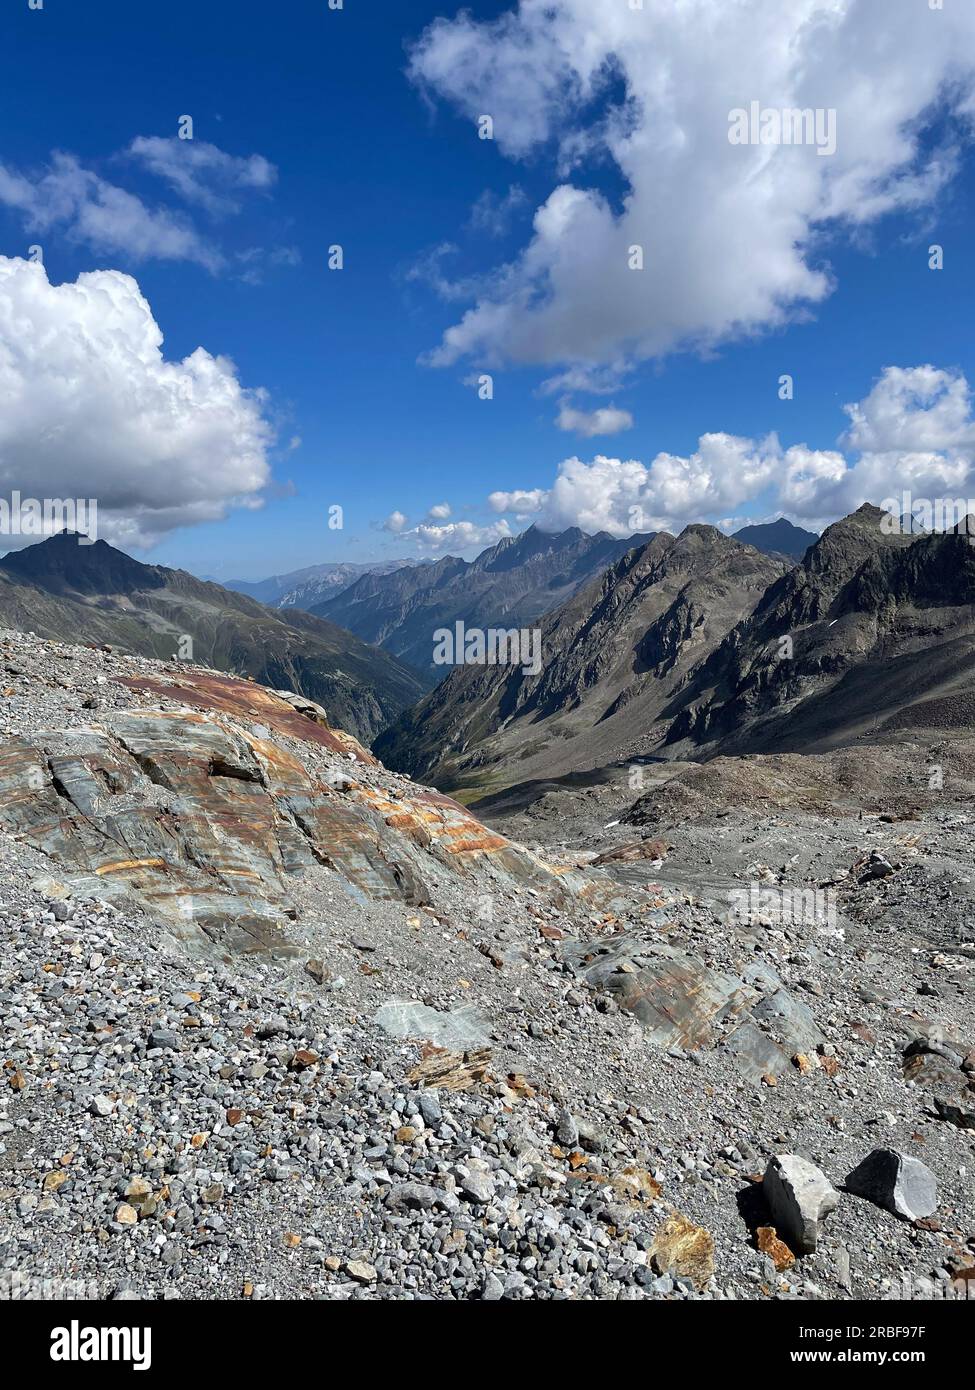 View from the Stubai Glacier (Stubaier gletscher) in the Austrian Alps, Stubai Valley (Stubaital), Tyrol, Austria, Europe Stock Photo